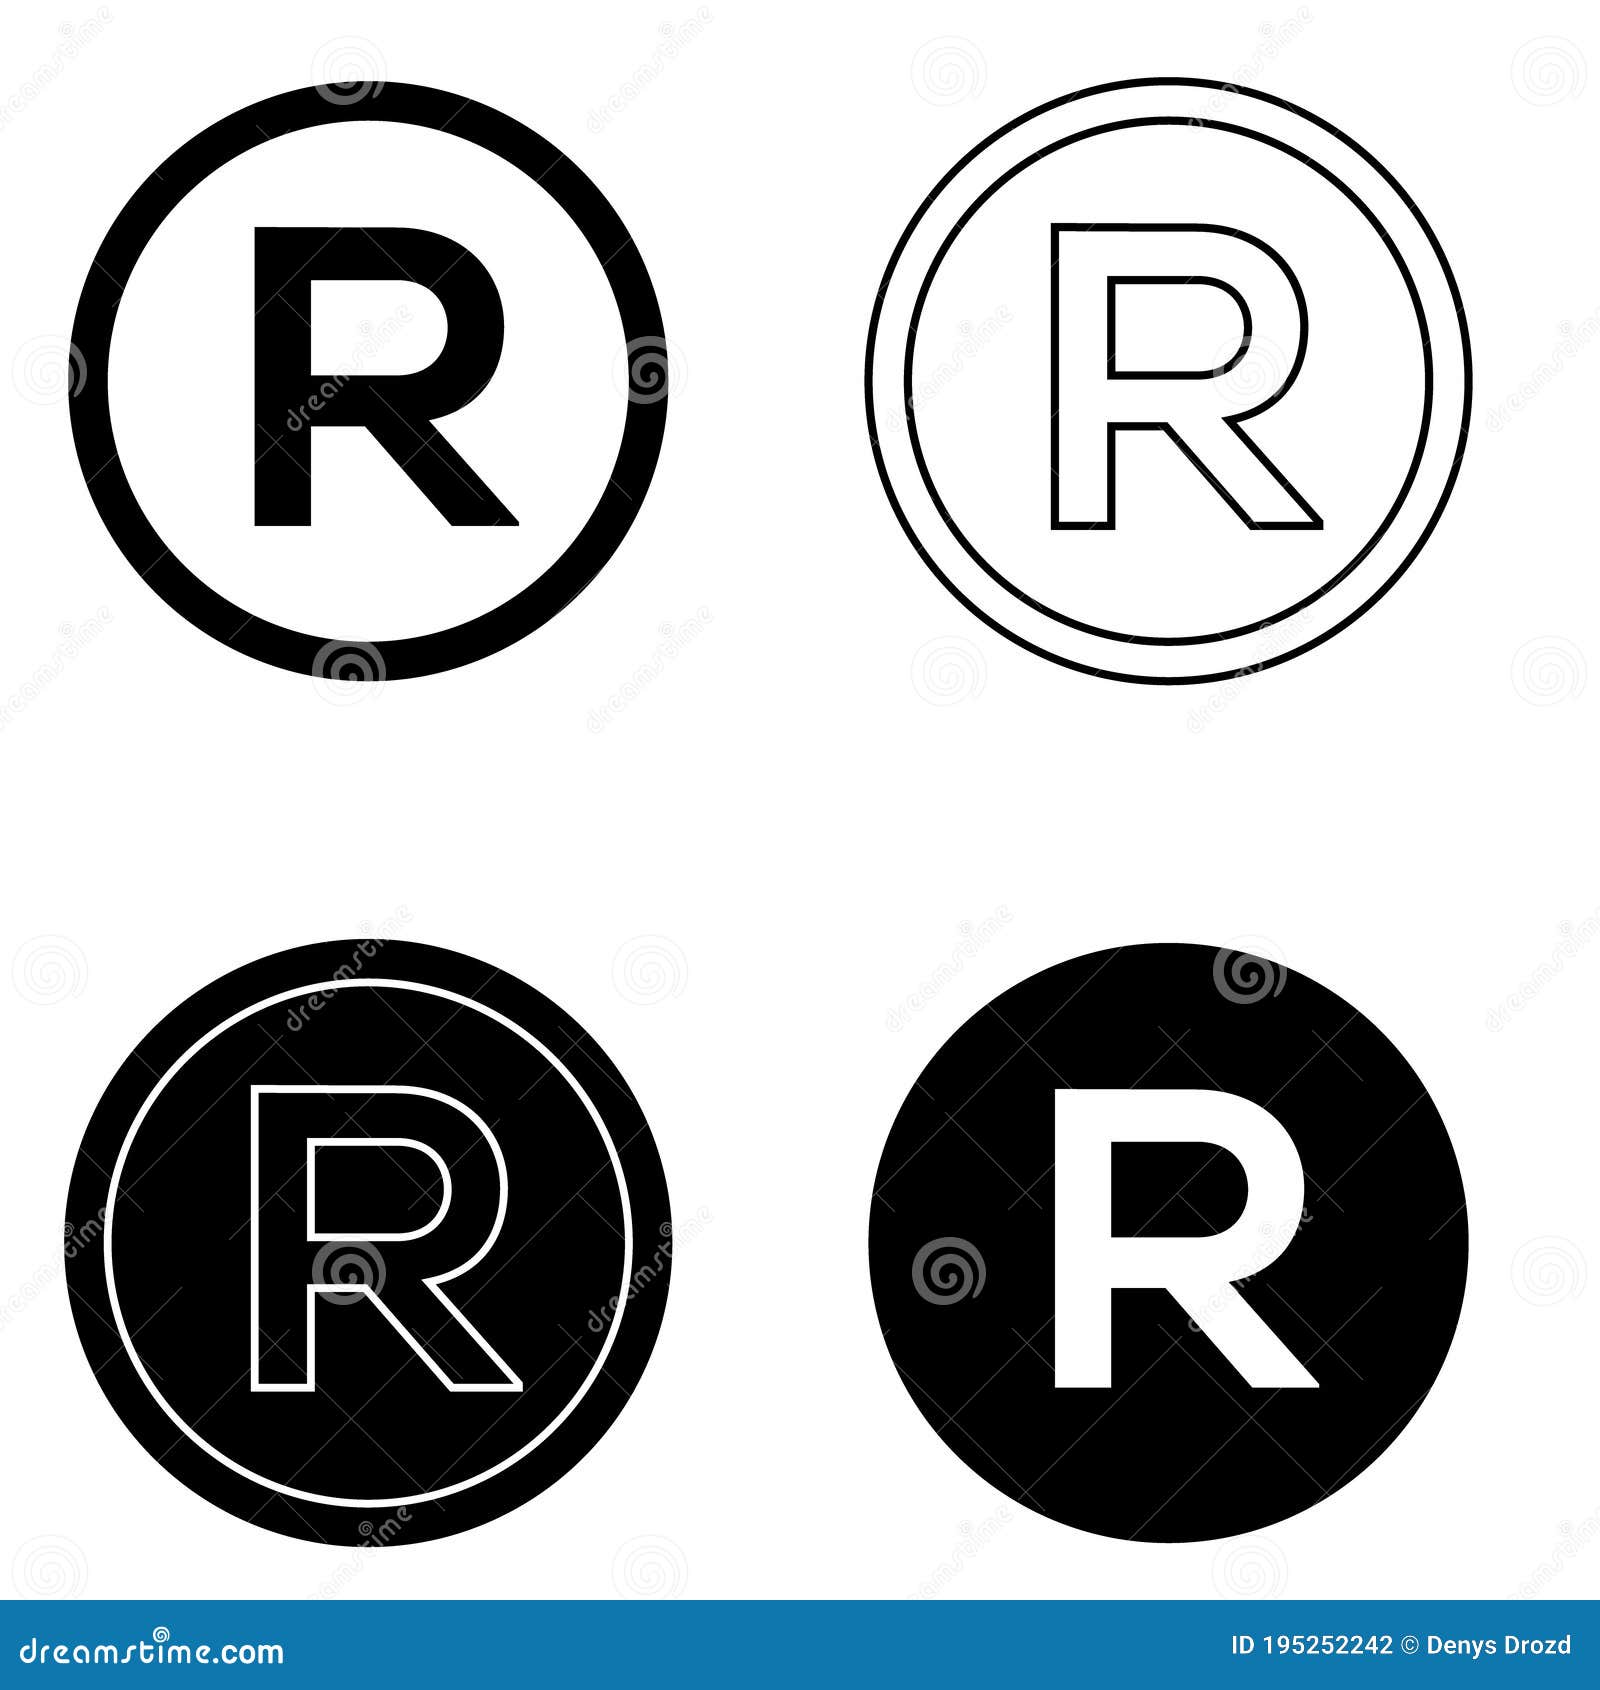 Bộ Vector biểu tượng R - Bộ Vector Biểu tượng Bản quyền giúp bạn bước vào thế giới của những thương hiệu nổi tiếng và uy tín. Với những biểu tượng này, bạn có thể tự tin thể hiện cá tính và thương hiệu của mình cho thế giới biết đến.